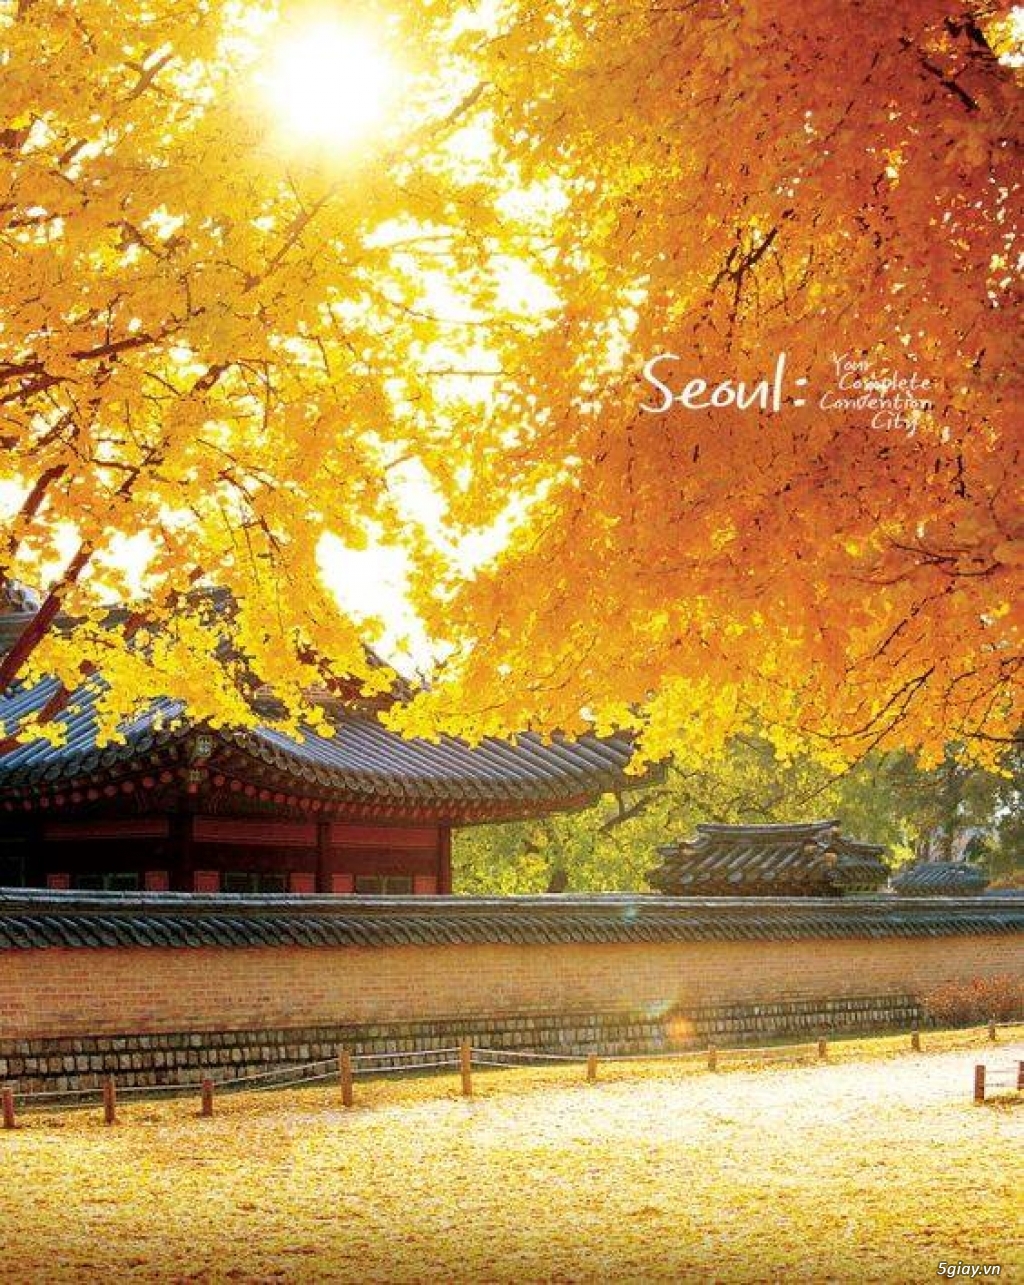 BankTour: Khám phá đất nước lãng mạn bậc nhất - Hàn Quốc - 9